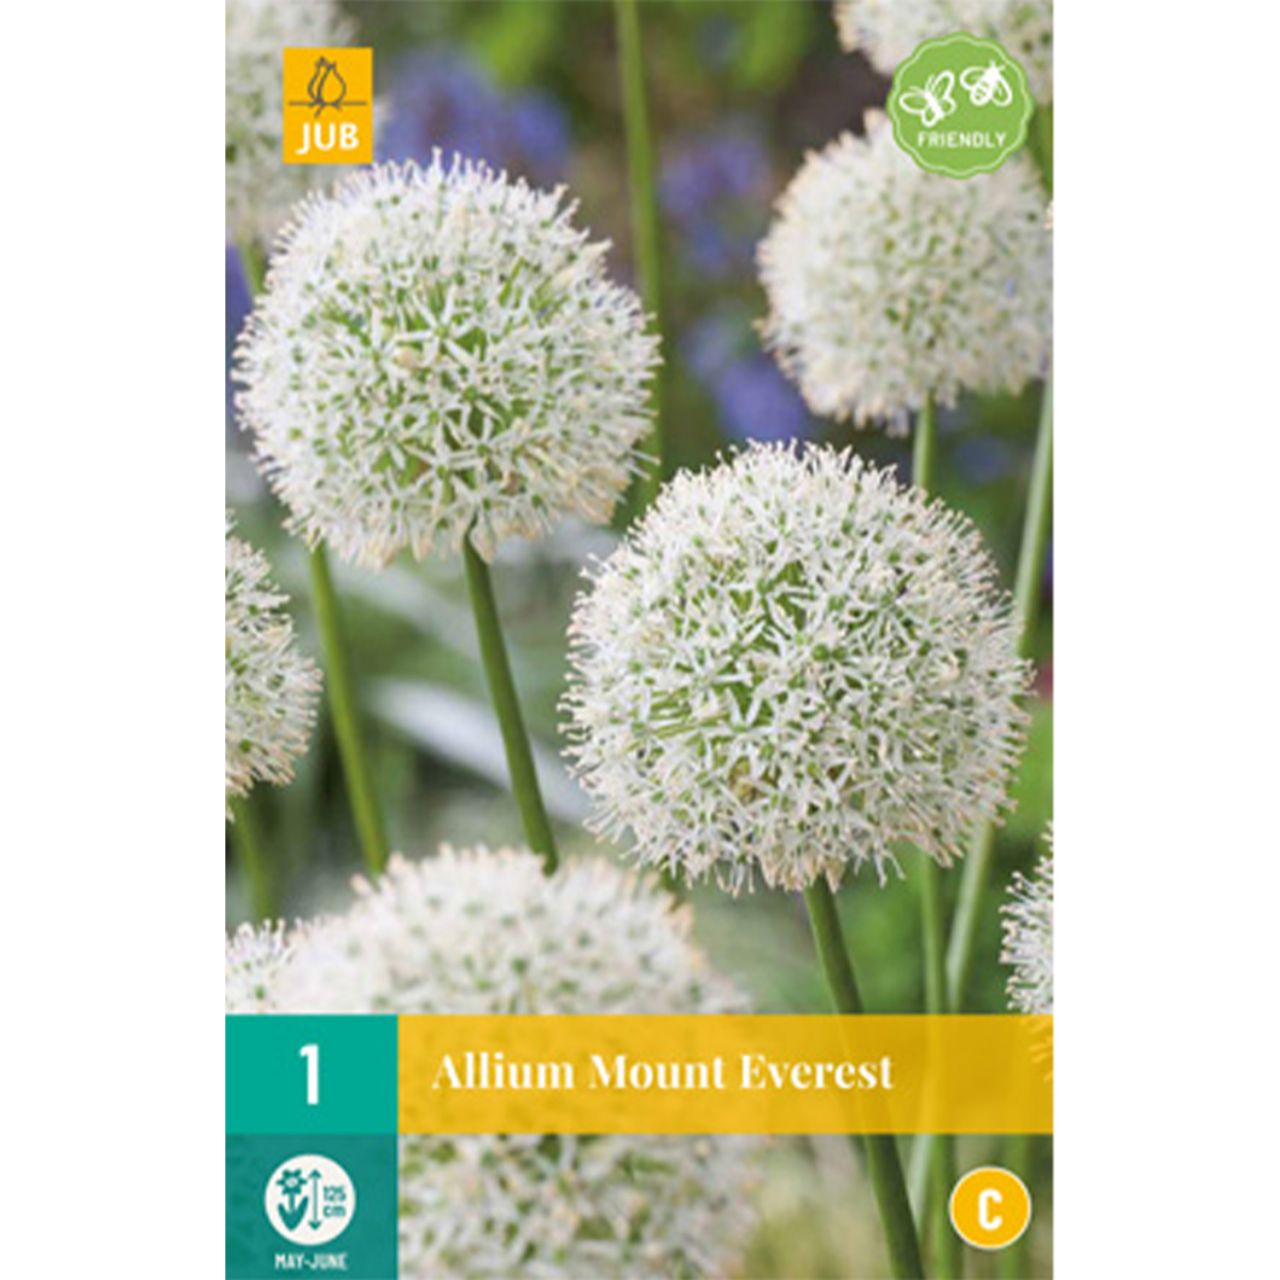 Kategorie <b>Herbst-Blumenzwiebeln </b> - Allium 'Mount Everest' - 1 Stück - Allium 'Mount Everest'